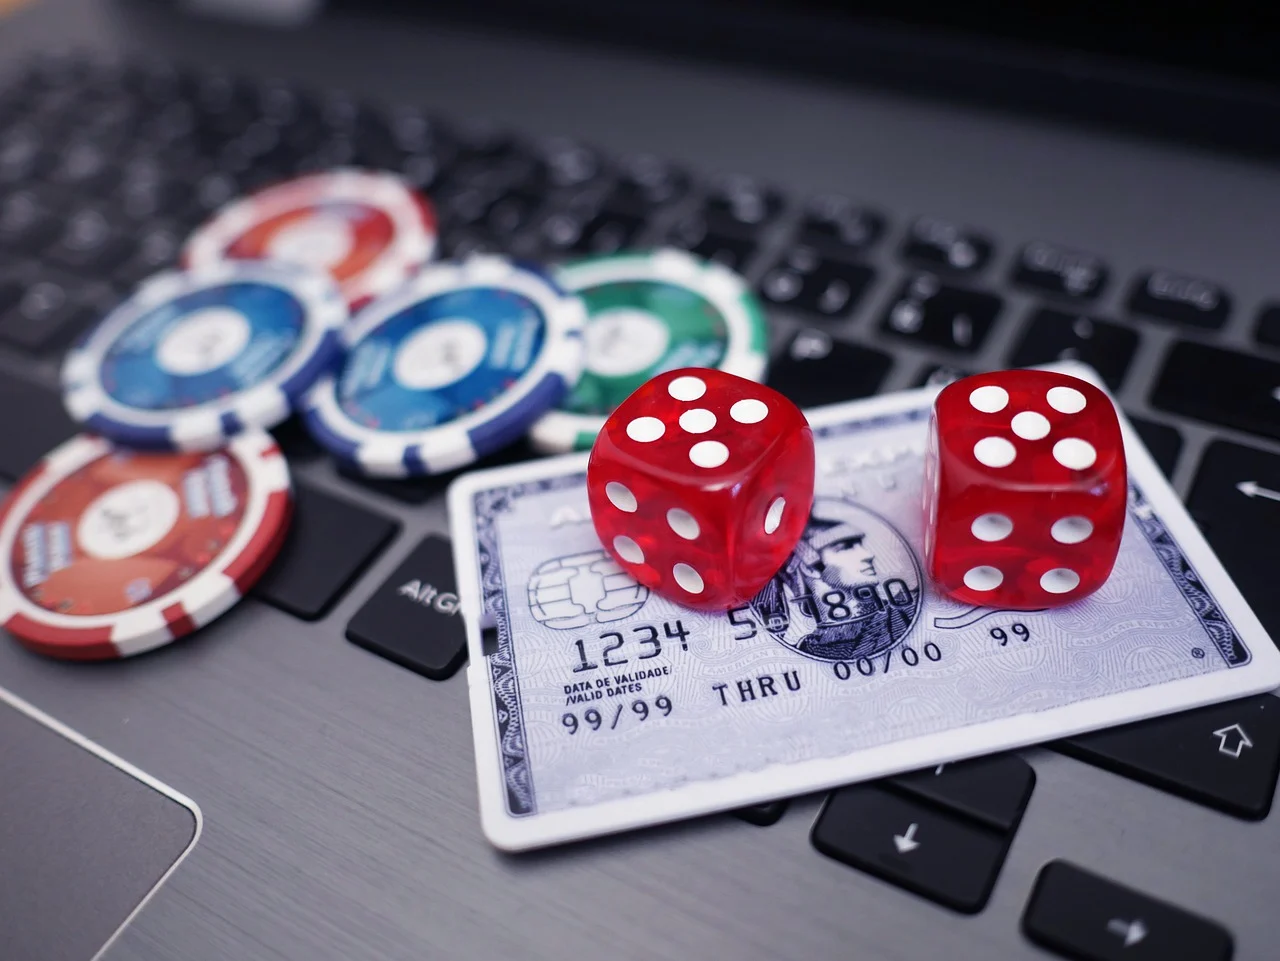 3 einfache Tipps zur Verwendung von Online Casino Österreich, um Ihrer Konkurrenz einen Schritt voraus zu sein